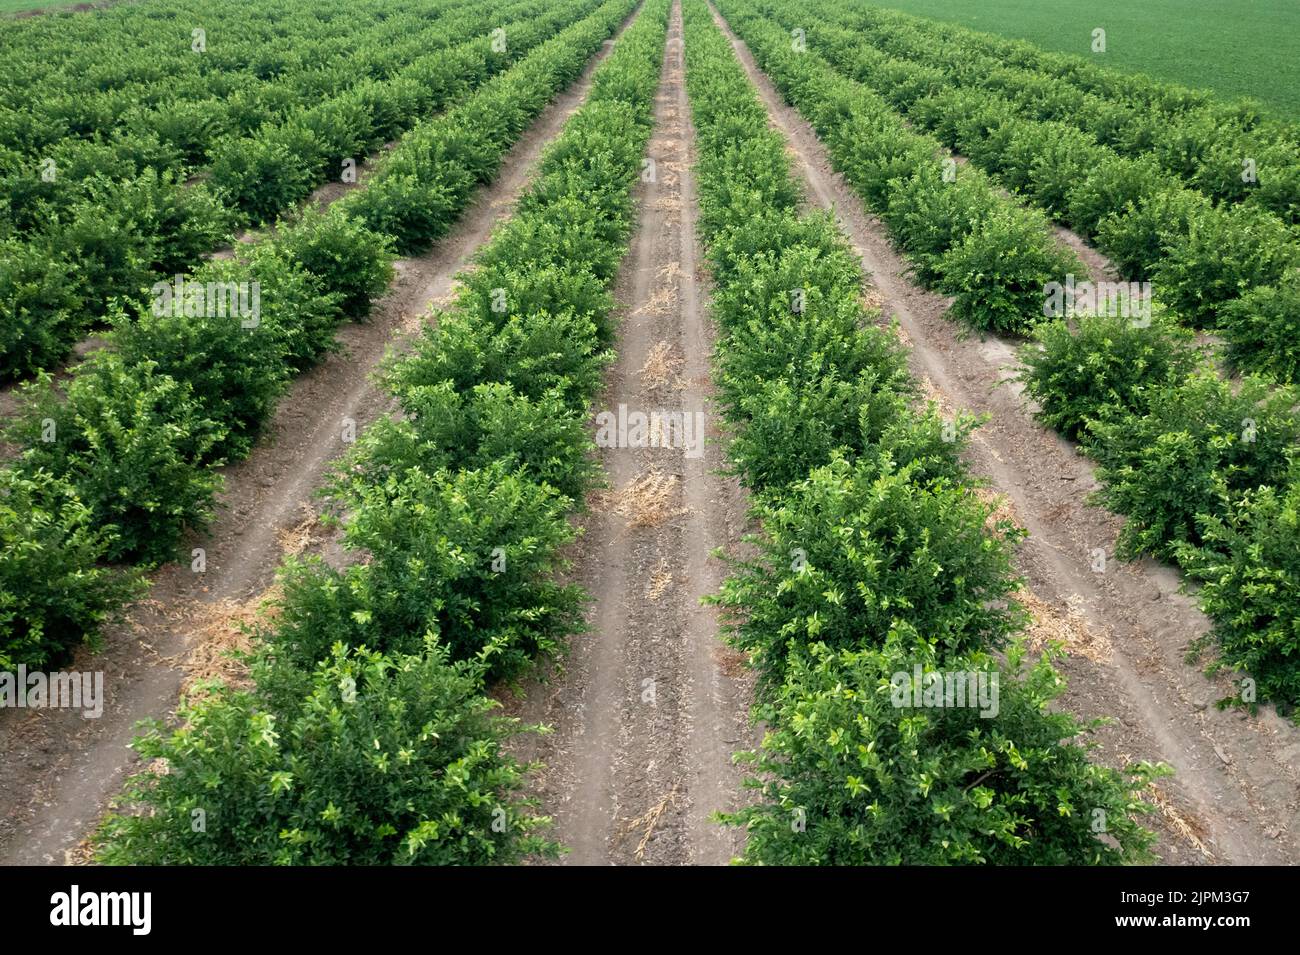 Vue aérienne du verger d'agrumes. Belle vue sur les citronniers en culture. Photo de haute qualité Banque D'Images